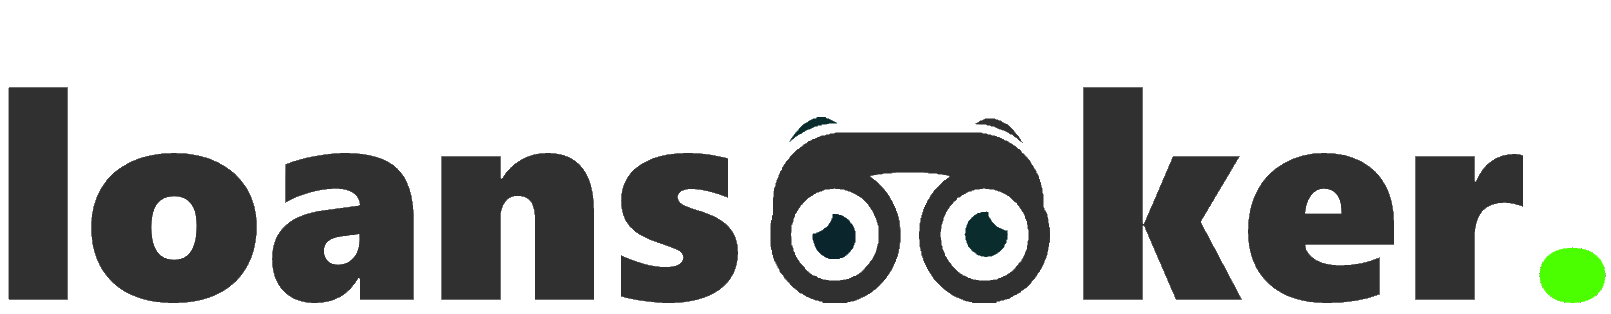 in-text-loanseeker-logo